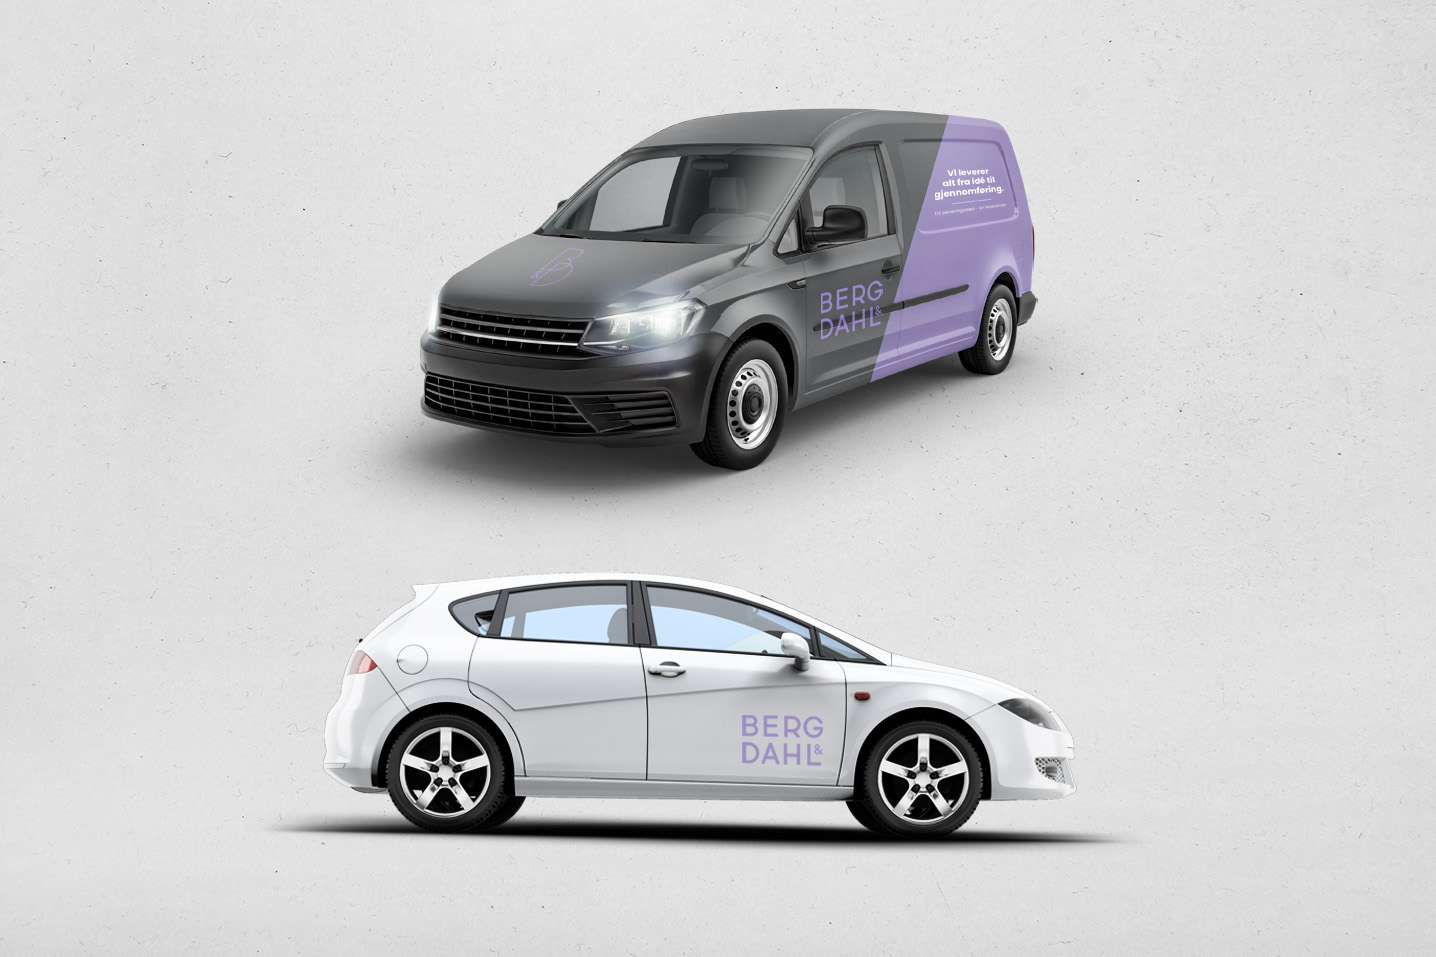 Sort varebil med lilla bildekor og Berg og Dahls nye logo. Hvit bil med lilla logo.